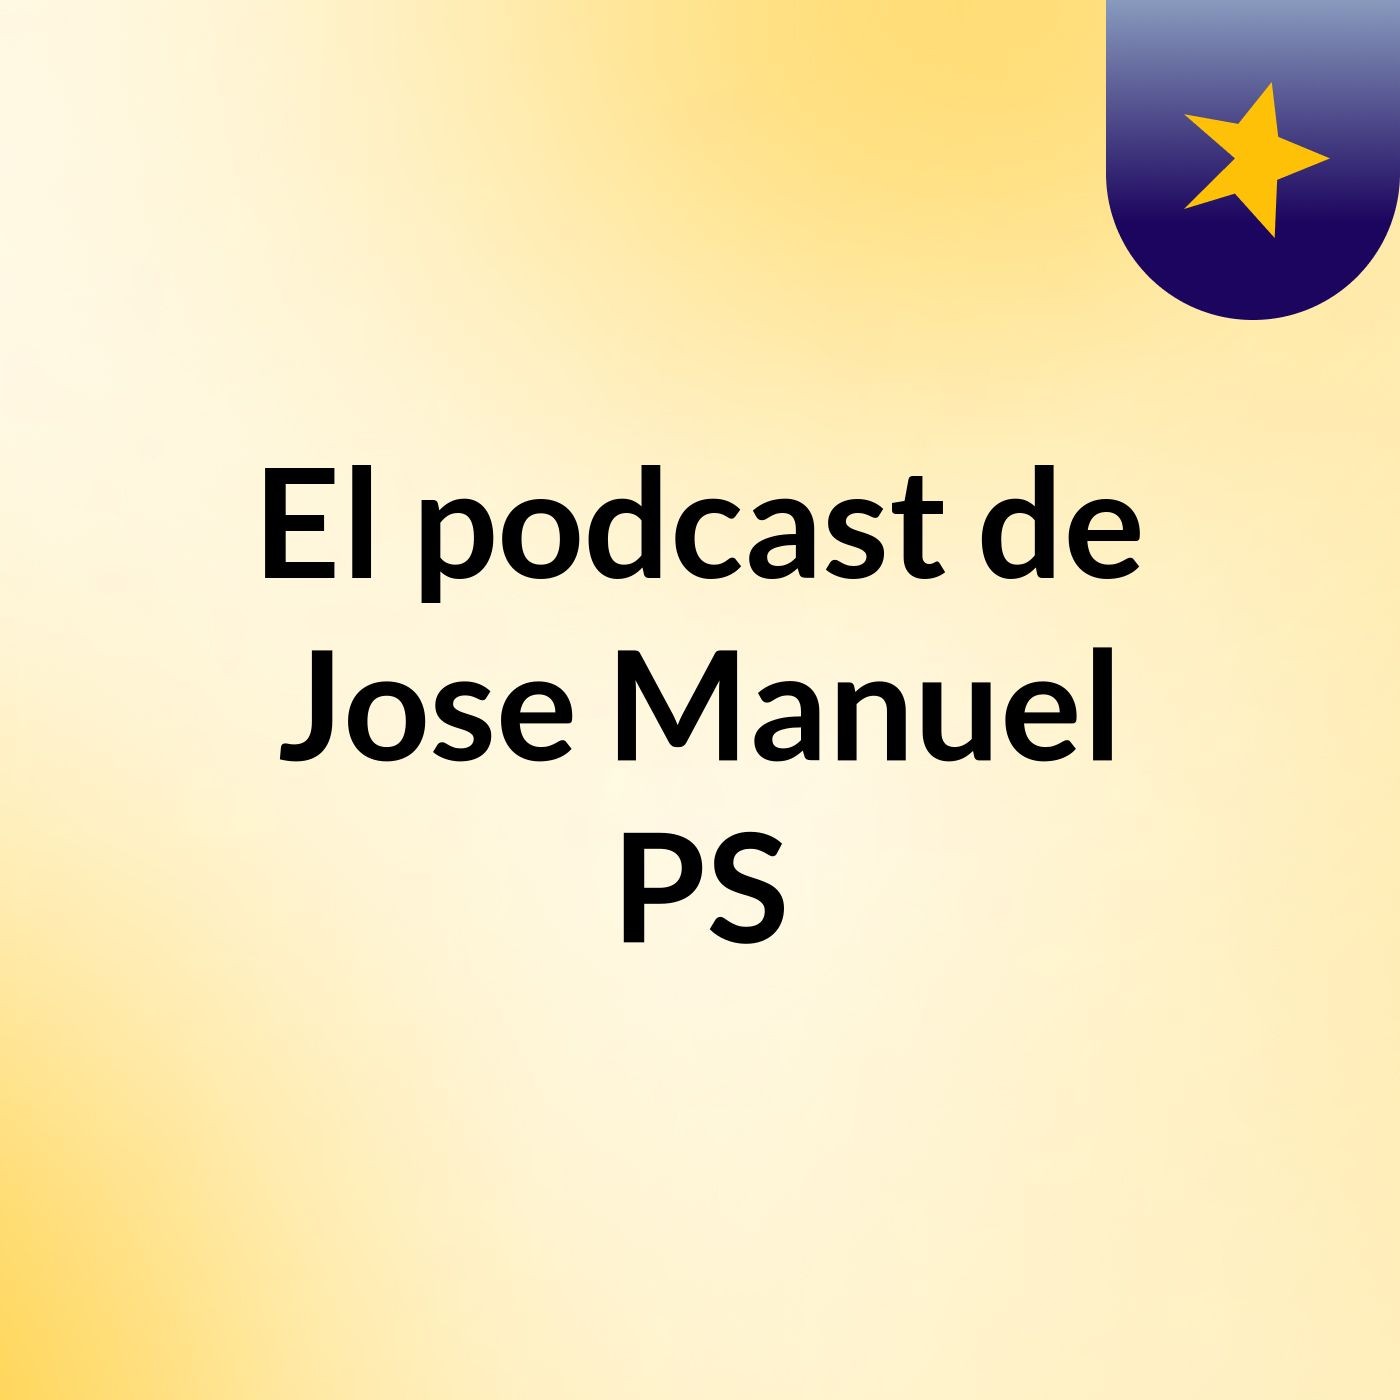 El podcast de Jose Manuel PS